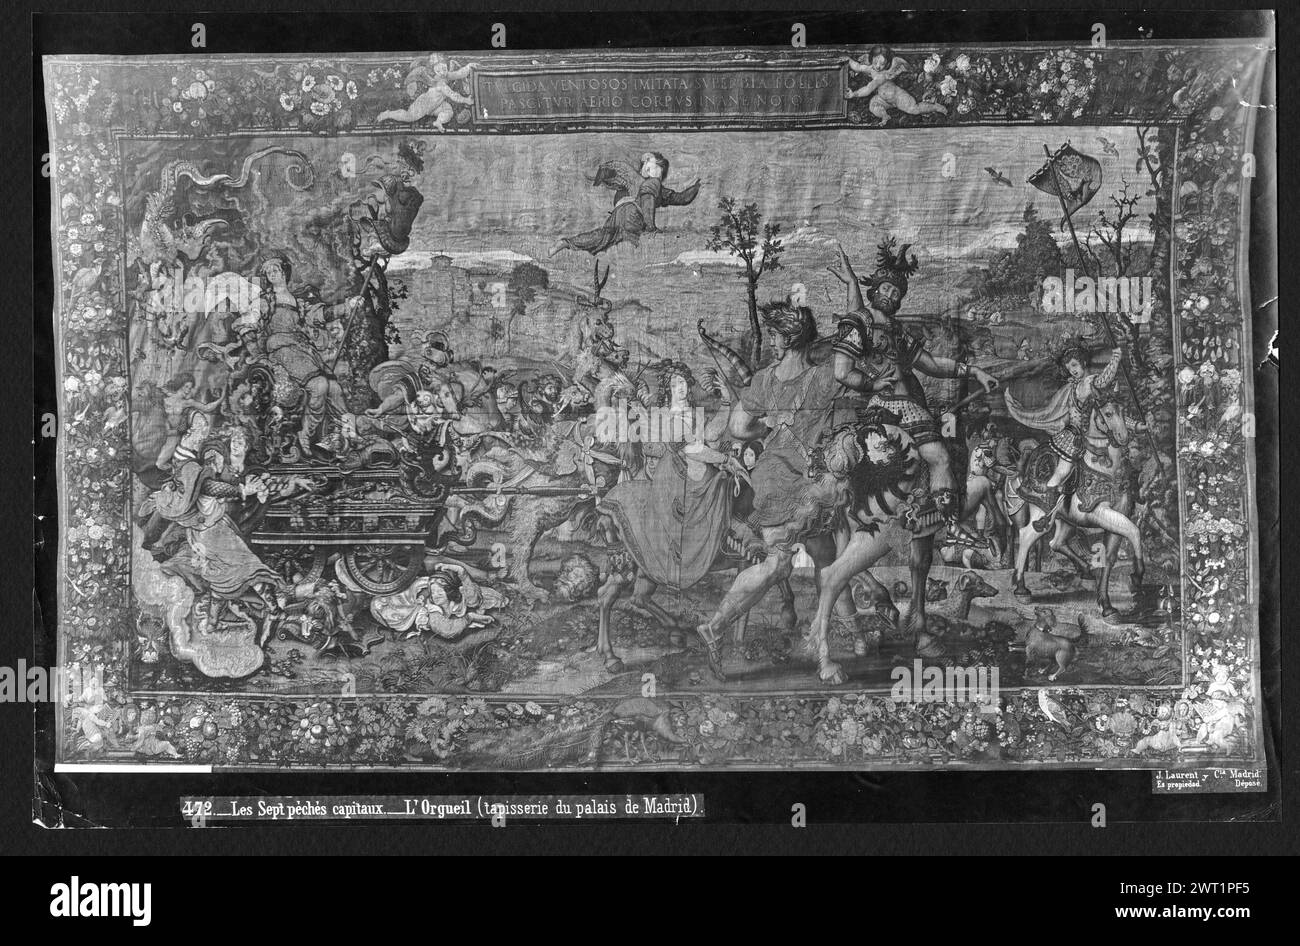 Fierté. Coecke van Aelst, Pieter (le jeune) (pays-Bas (avant 1600) - Flandre, bef.1527-CA.1559) (auteur du dessin) [peintre] Pannemaker, Wilhelm de (pays-Bas (avant 1600) - Flandre, acte. 1535-1578) (atelier) [tisserand] c. 1550 tapisserie dimensions : H 4,47 x l 7,48 m tapisserie matériaux/techniques : laine et soie (trame) ; fil métallique (or, trame) ; fil métallique (argent, trame) culture : Centre de tissage flamand : Bruxelles histoire de propriété : Marie de Hongrie coll. Philippe II coll., Madrid. Espagne, Madrid, Palacio Real de Madrid, accno. A. 257-7428. Inscriptions : inscription en borde supérieure Banque D'Images